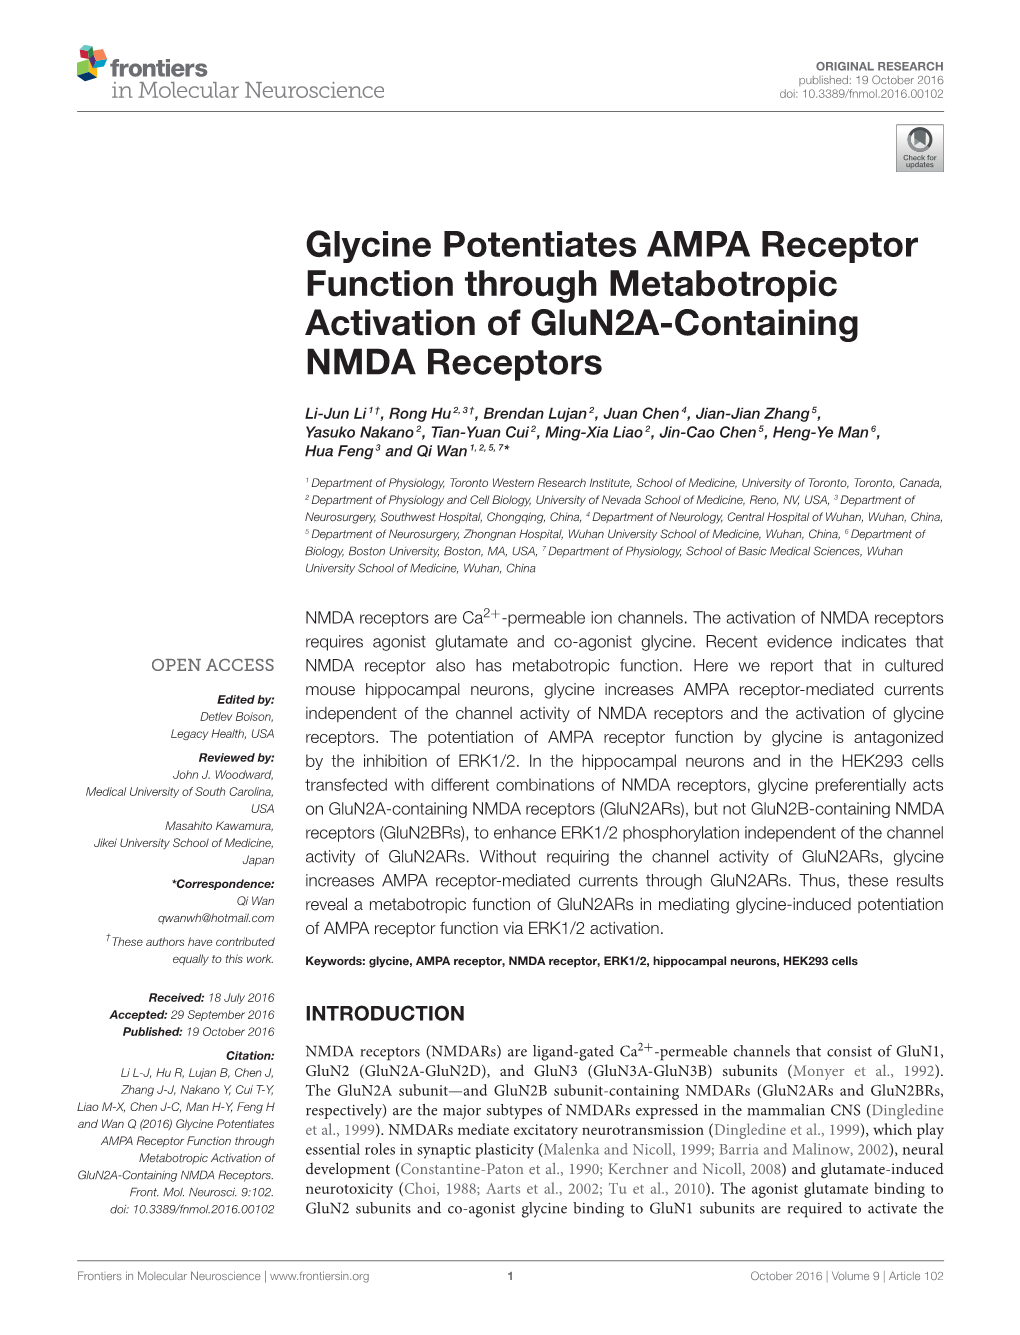 Glycine Potentiates AMPA Receptor Function Through Metabotropic Activation of Glun2a-Containing NMDA Receptors